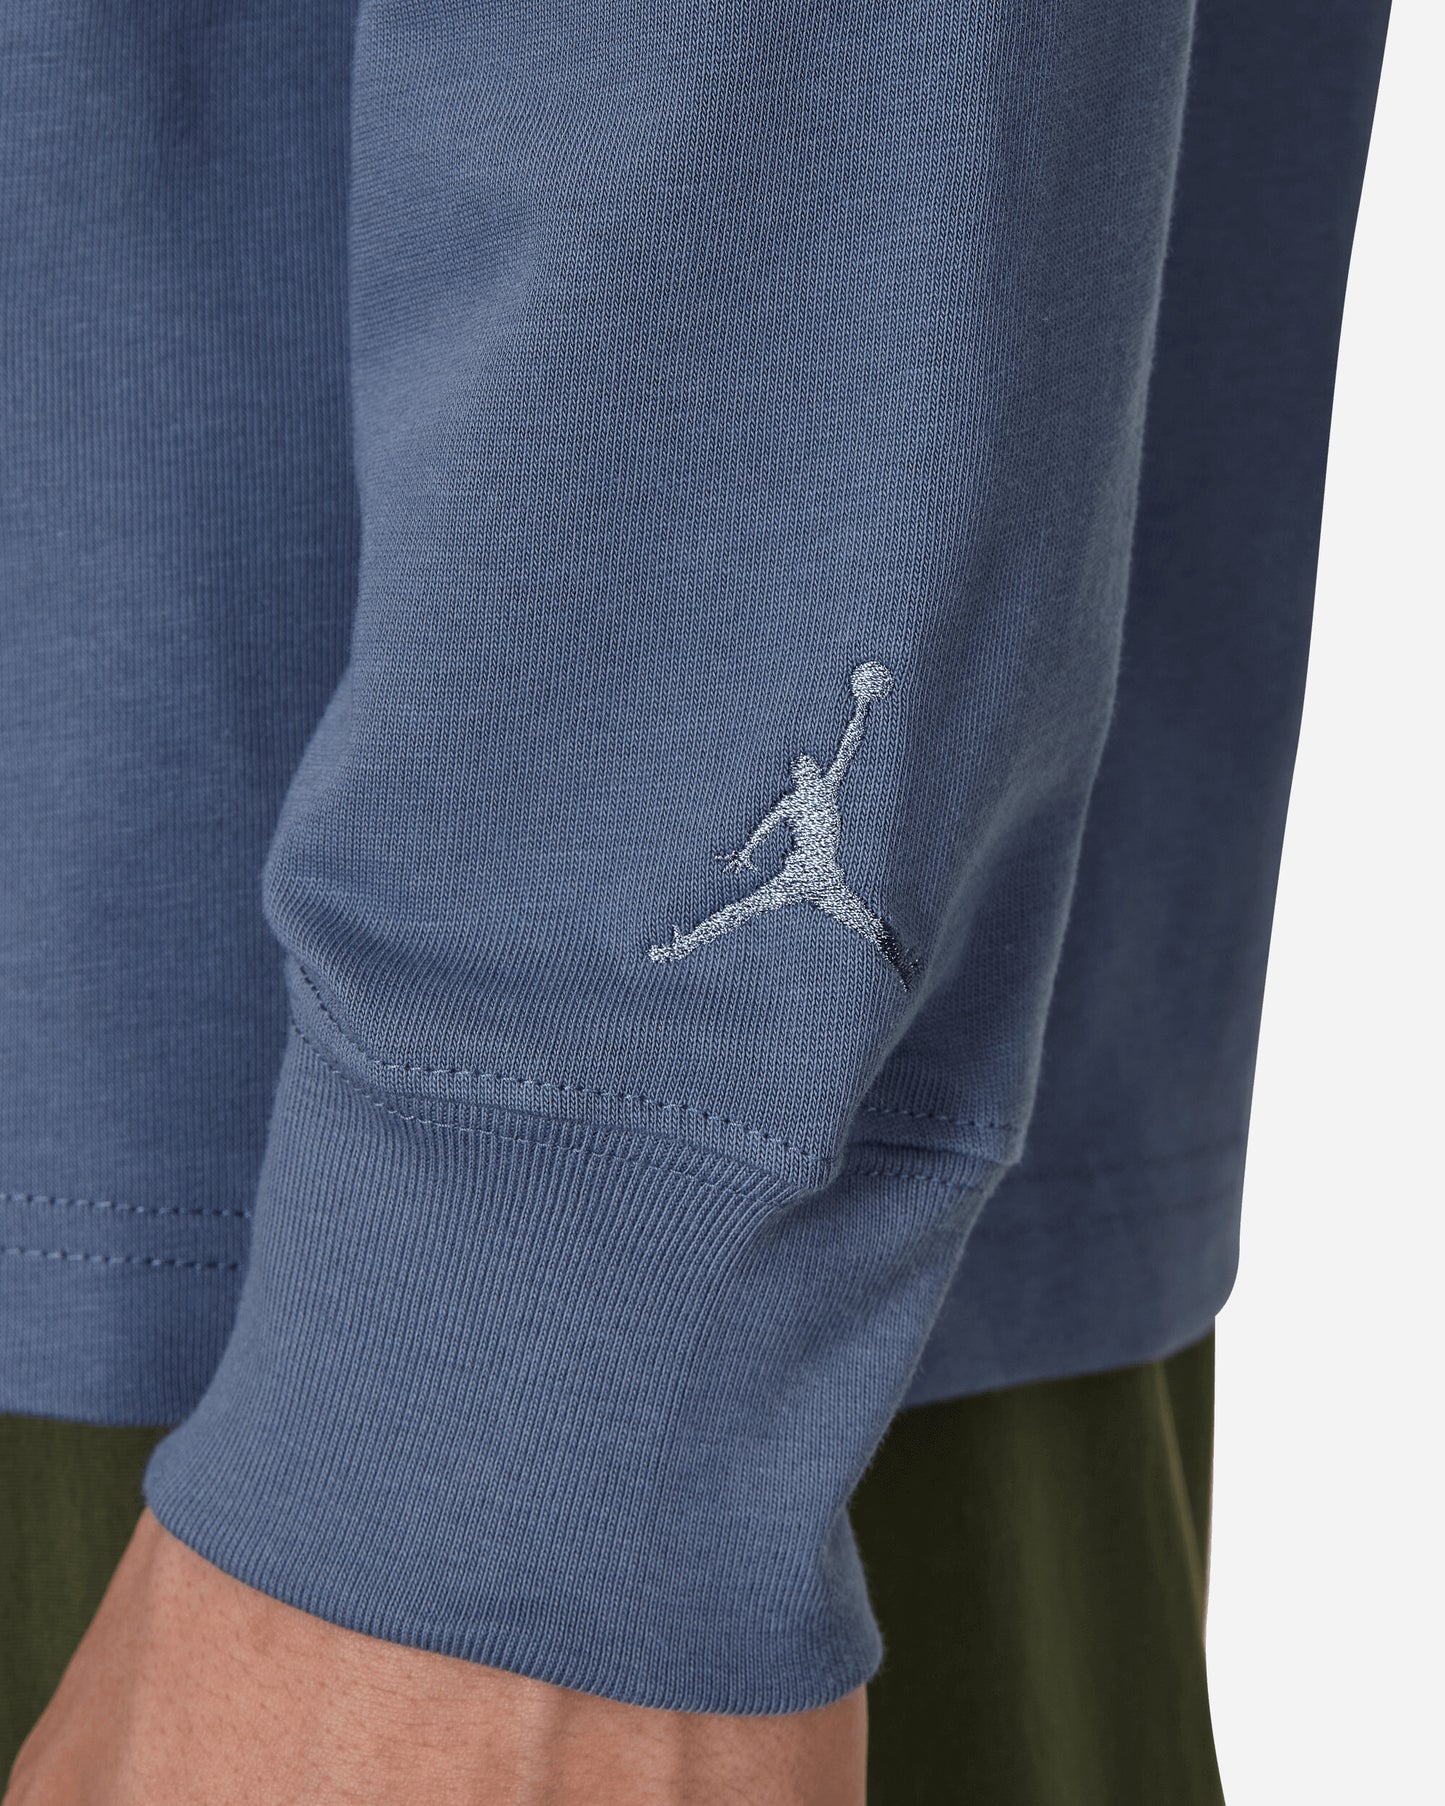 Nike Jordan Air Jordan Wm Ls Tee Diffused Blue T-Shirts Longsleeve FJ0702-491